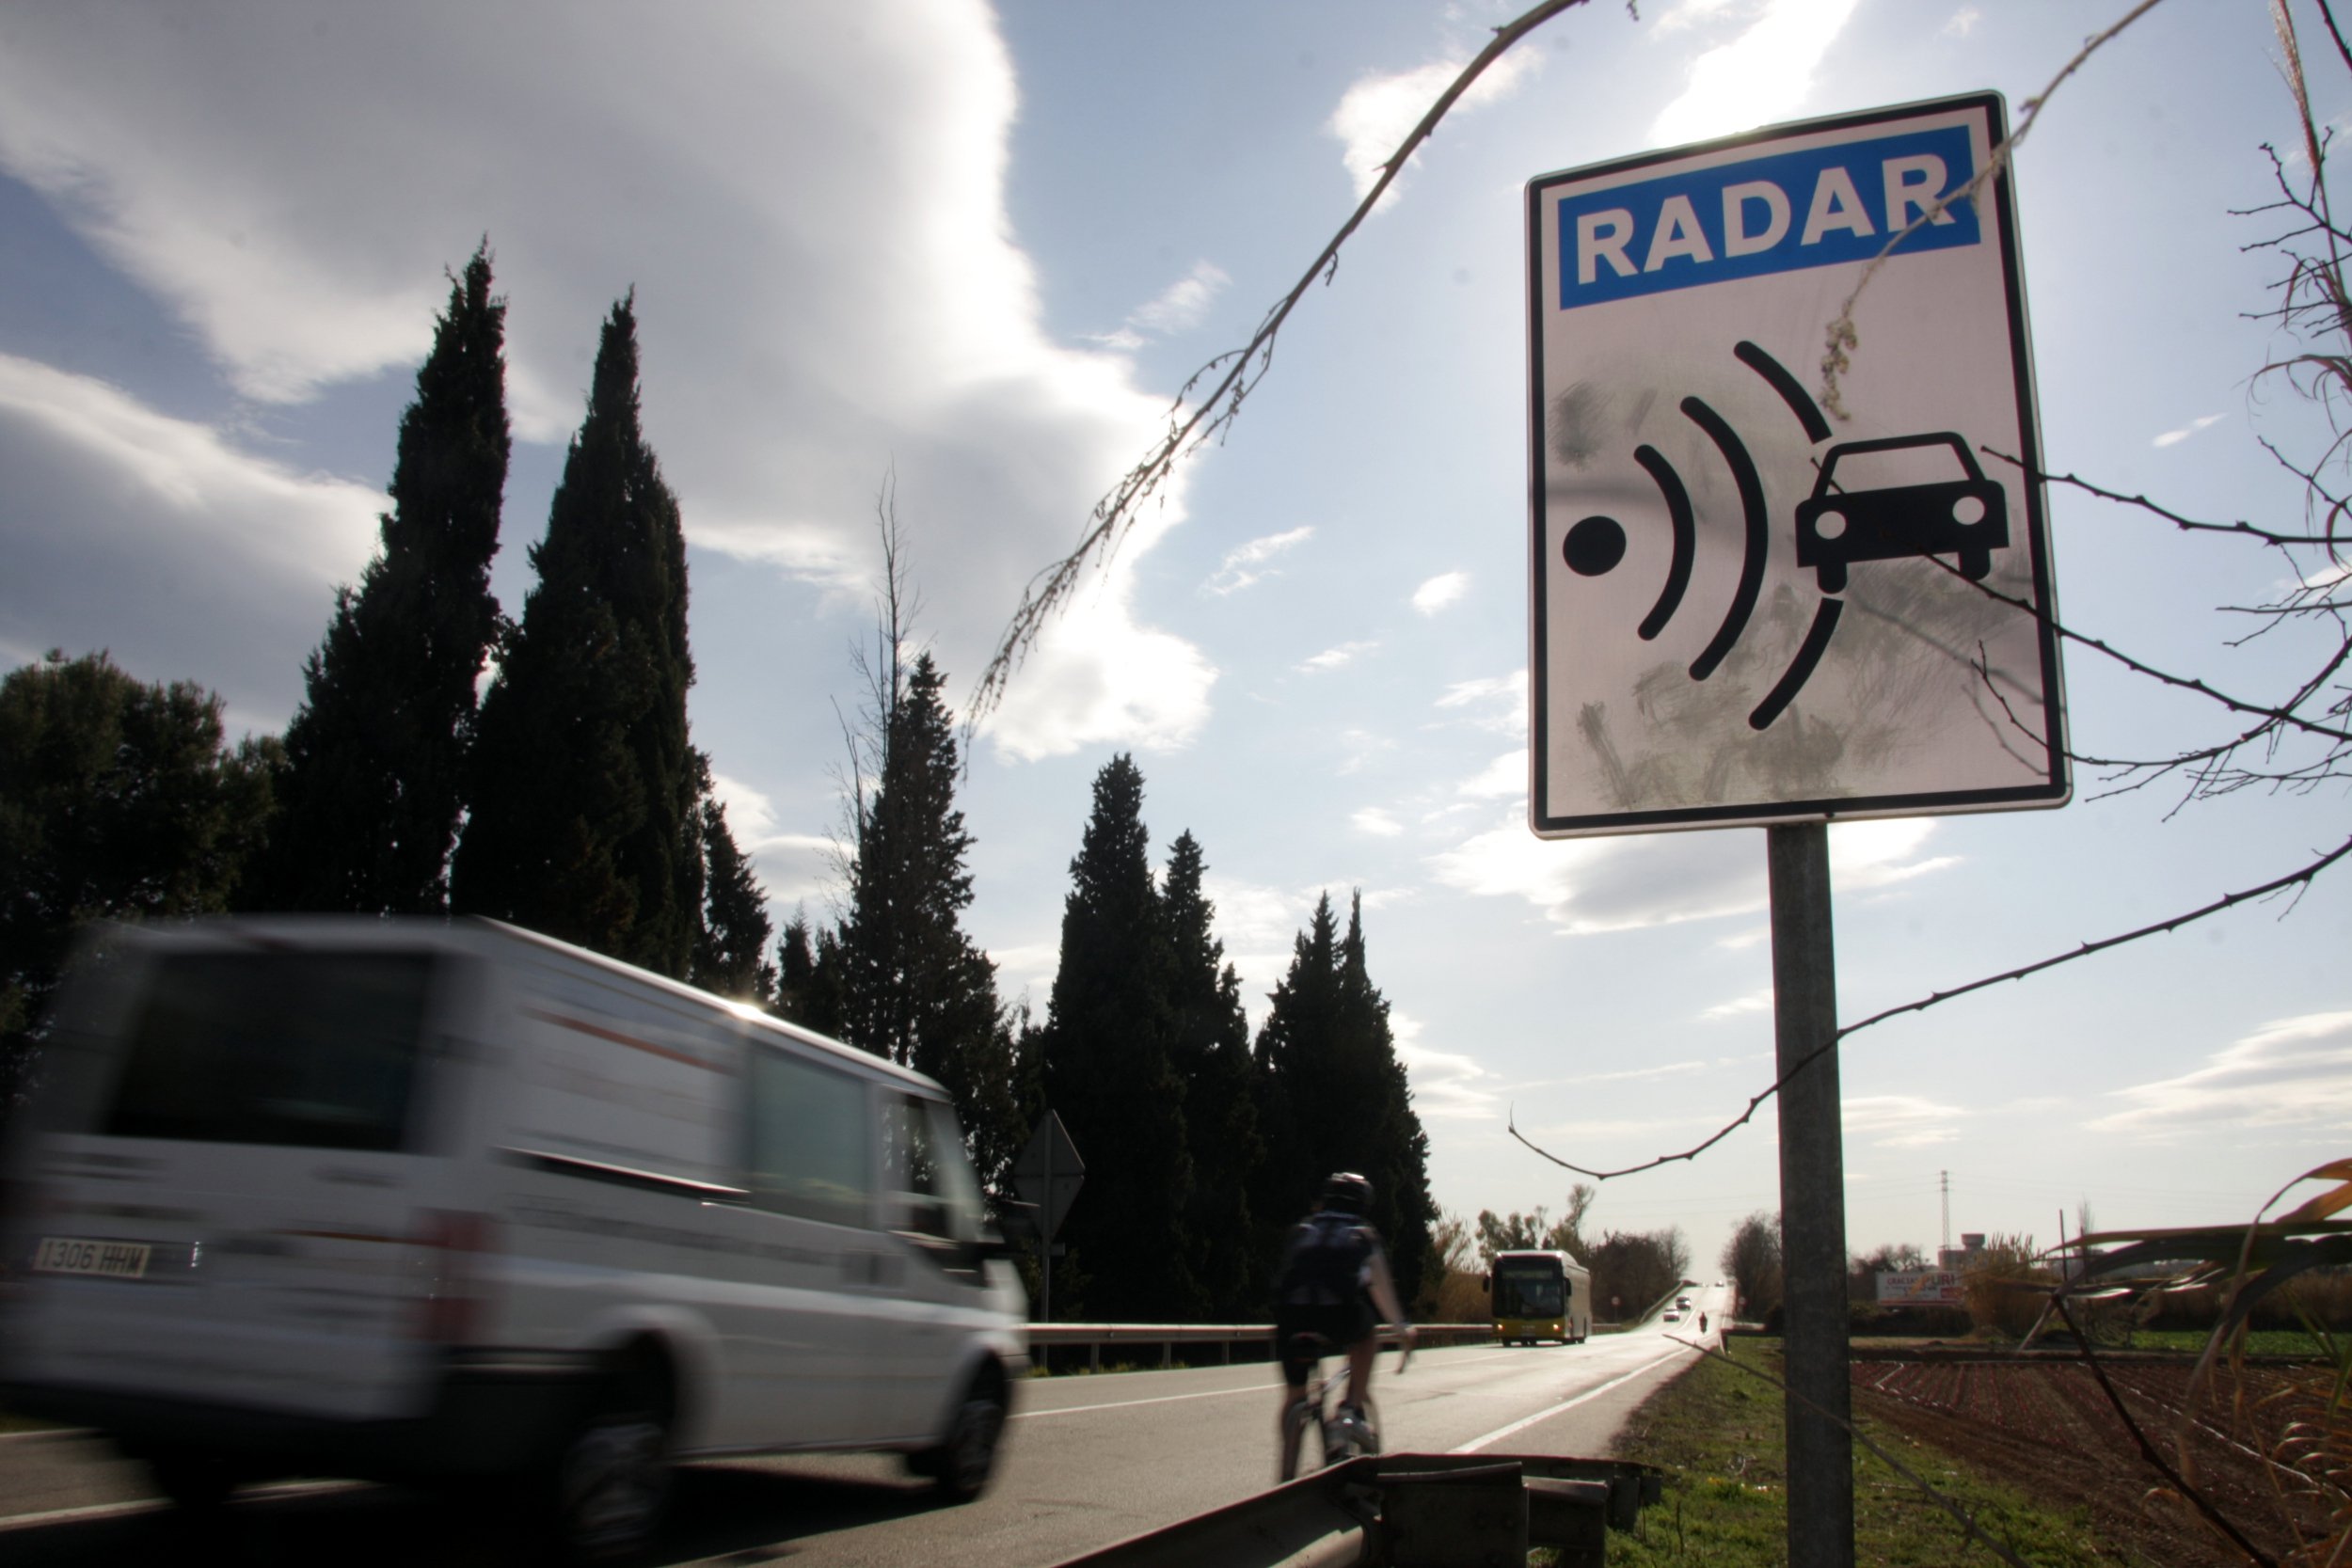 Tráfico aumentará a 32 los radares de tramo en Catalunya